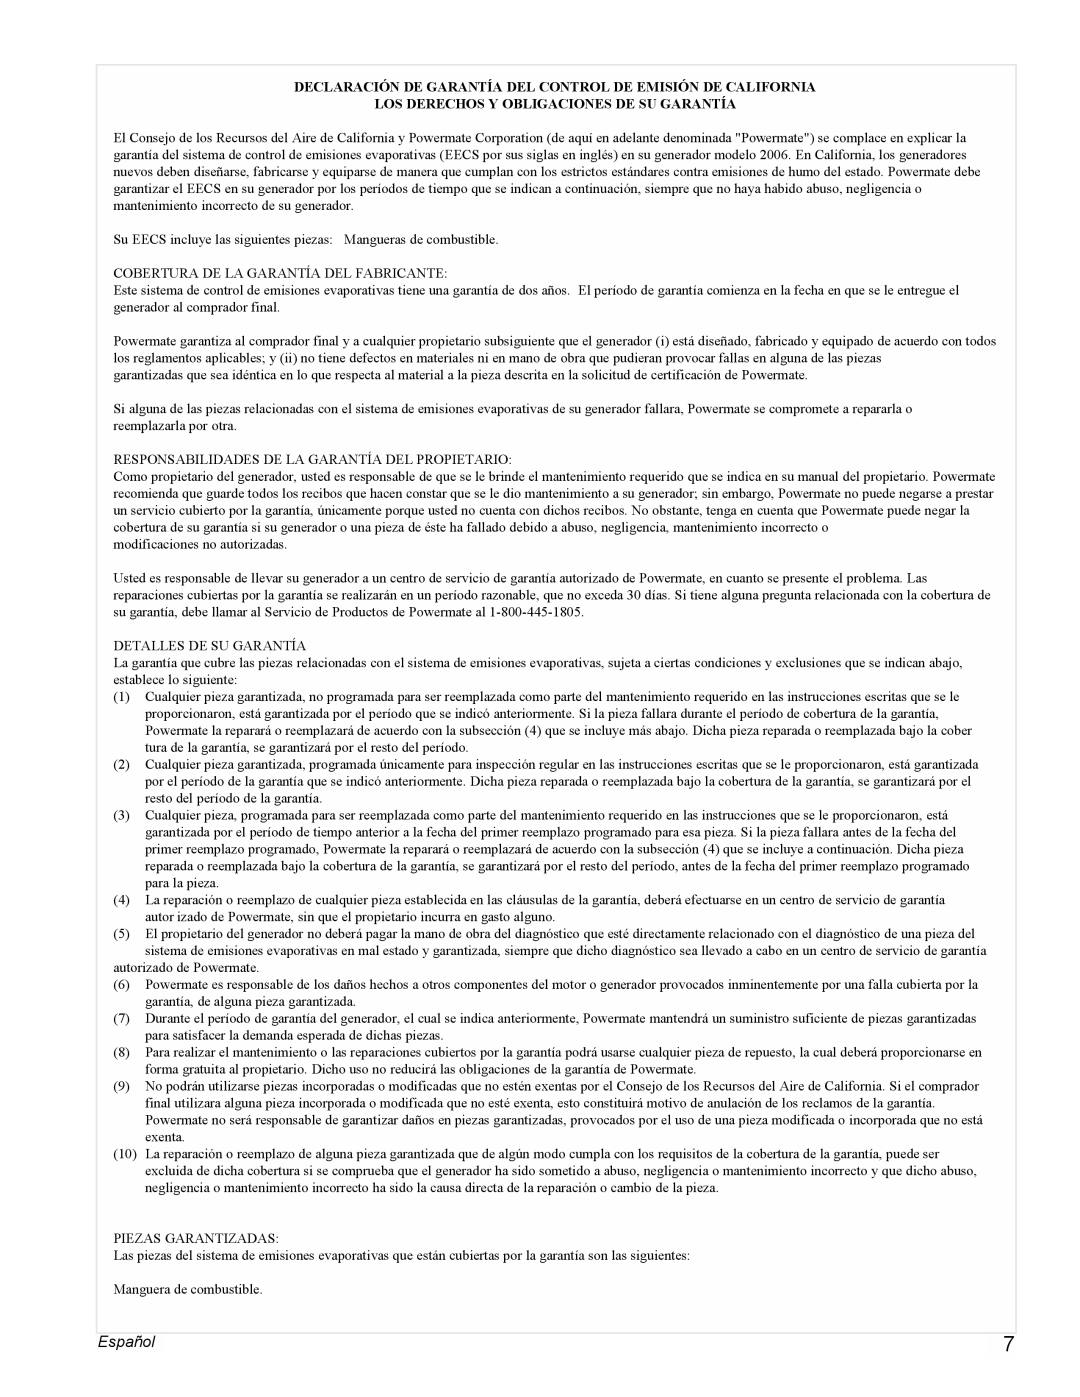 Powermate PMC543000 manual Español, Los Derechos Y Obligaciones De Su Garantía 